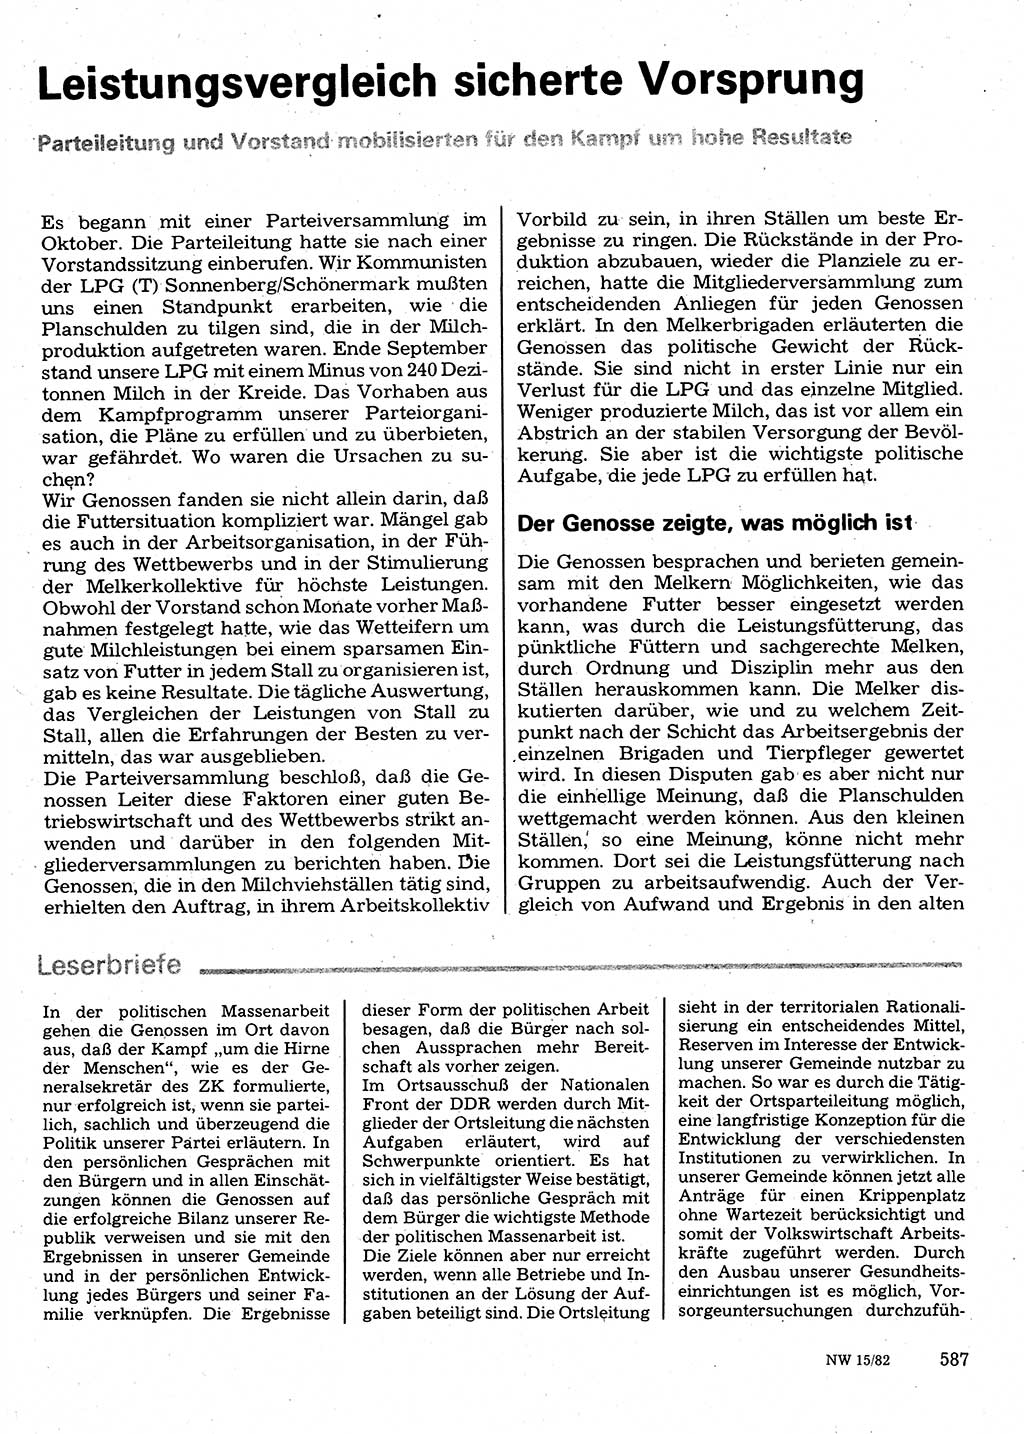 Neuer Weg (NW), Organ des Zentralkomitees (ZK) der SED (Sozialistische Einheitspartei Deutschlands) für Fragen des Parteilebens, 37. Jahrgang [Deutsche Demokratische Republik (DDR)] 1982, Seite 587 (NW ZK SED DDR 1982, S. 587)